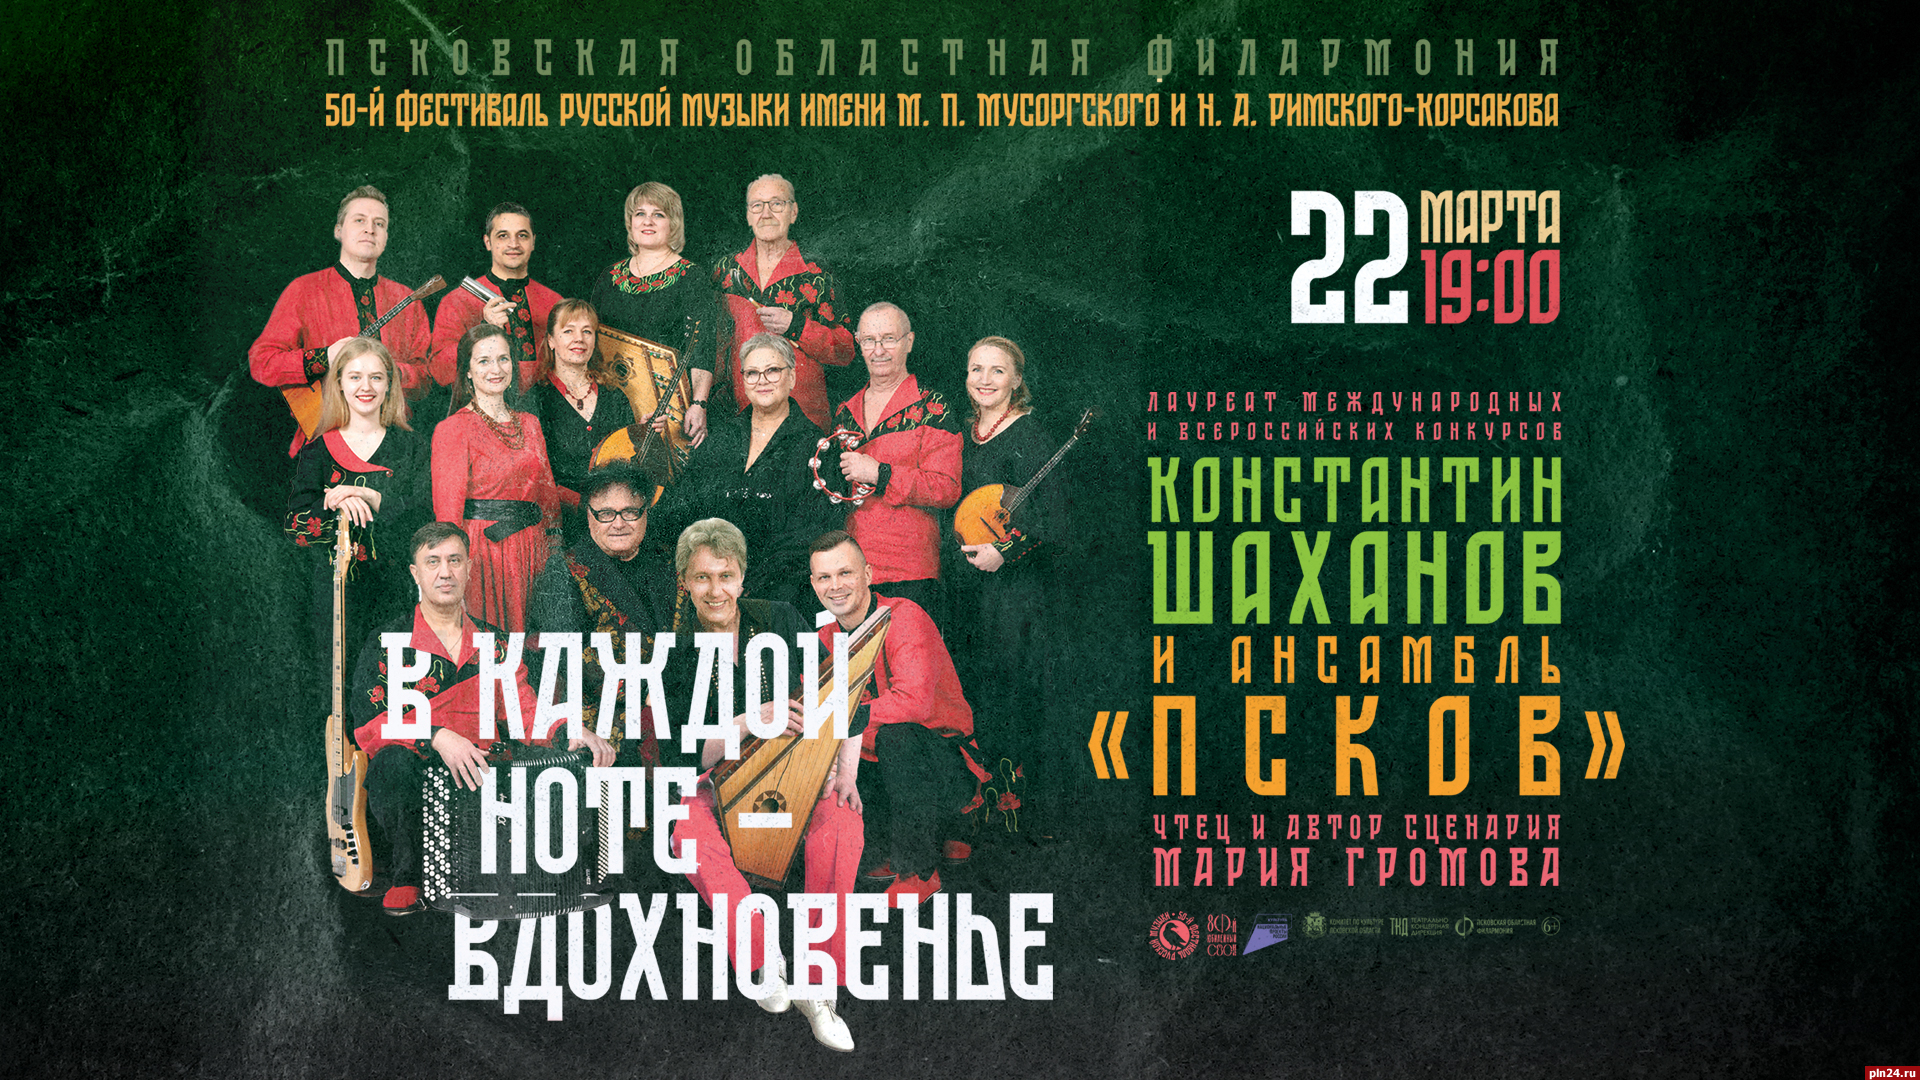 Новую программу представит ансамбль «Псков» на Фестивале русской музыки